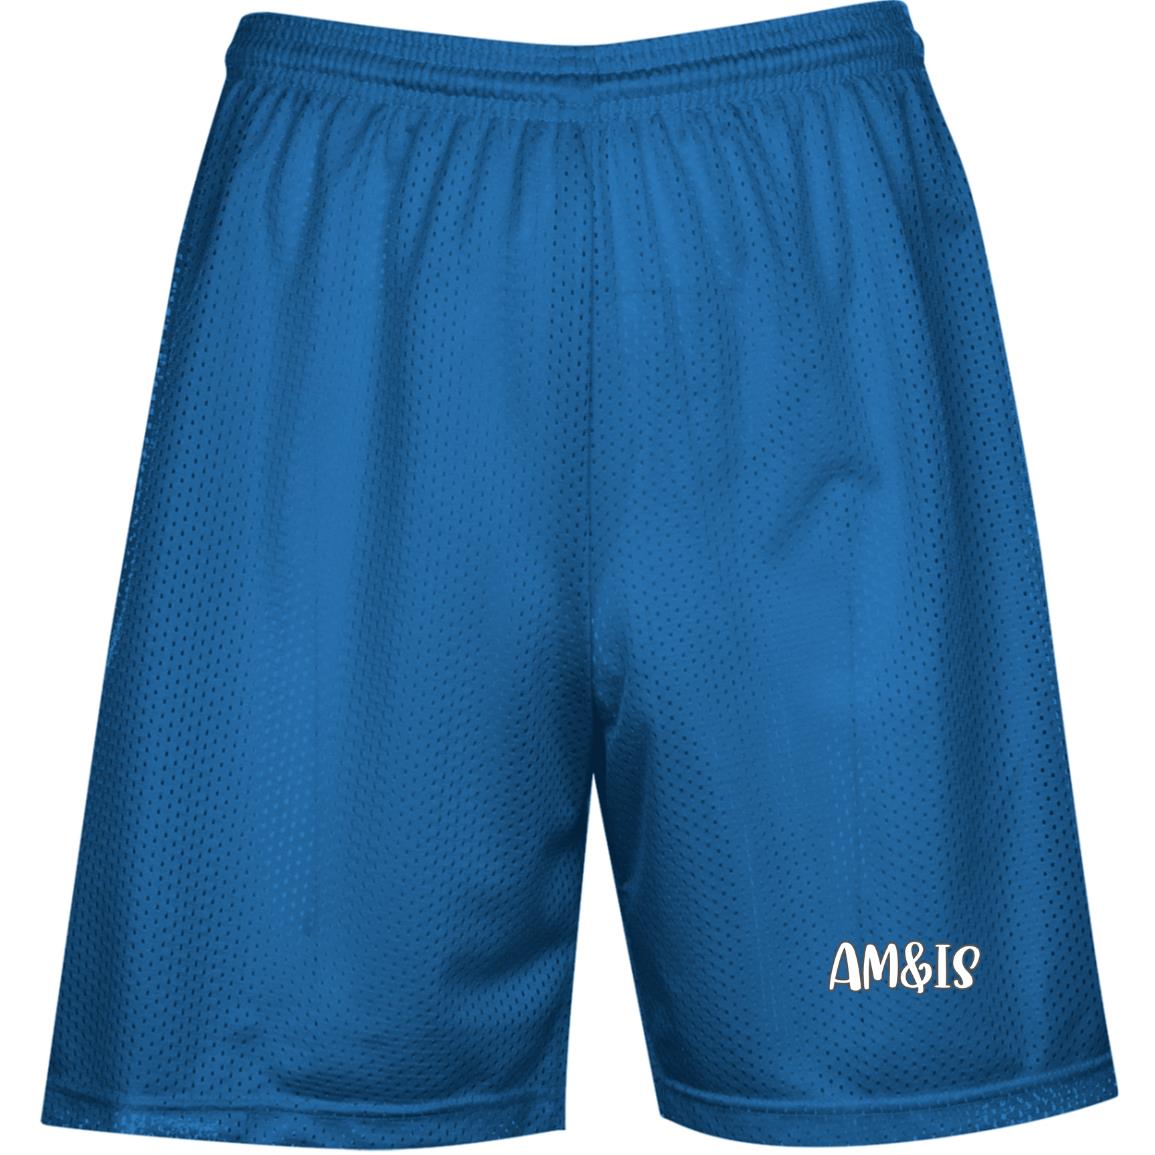 TRUE ROYAL - Am&IS Activewear Performance Mesh Shorts - mens shorts at TFC&H Co.